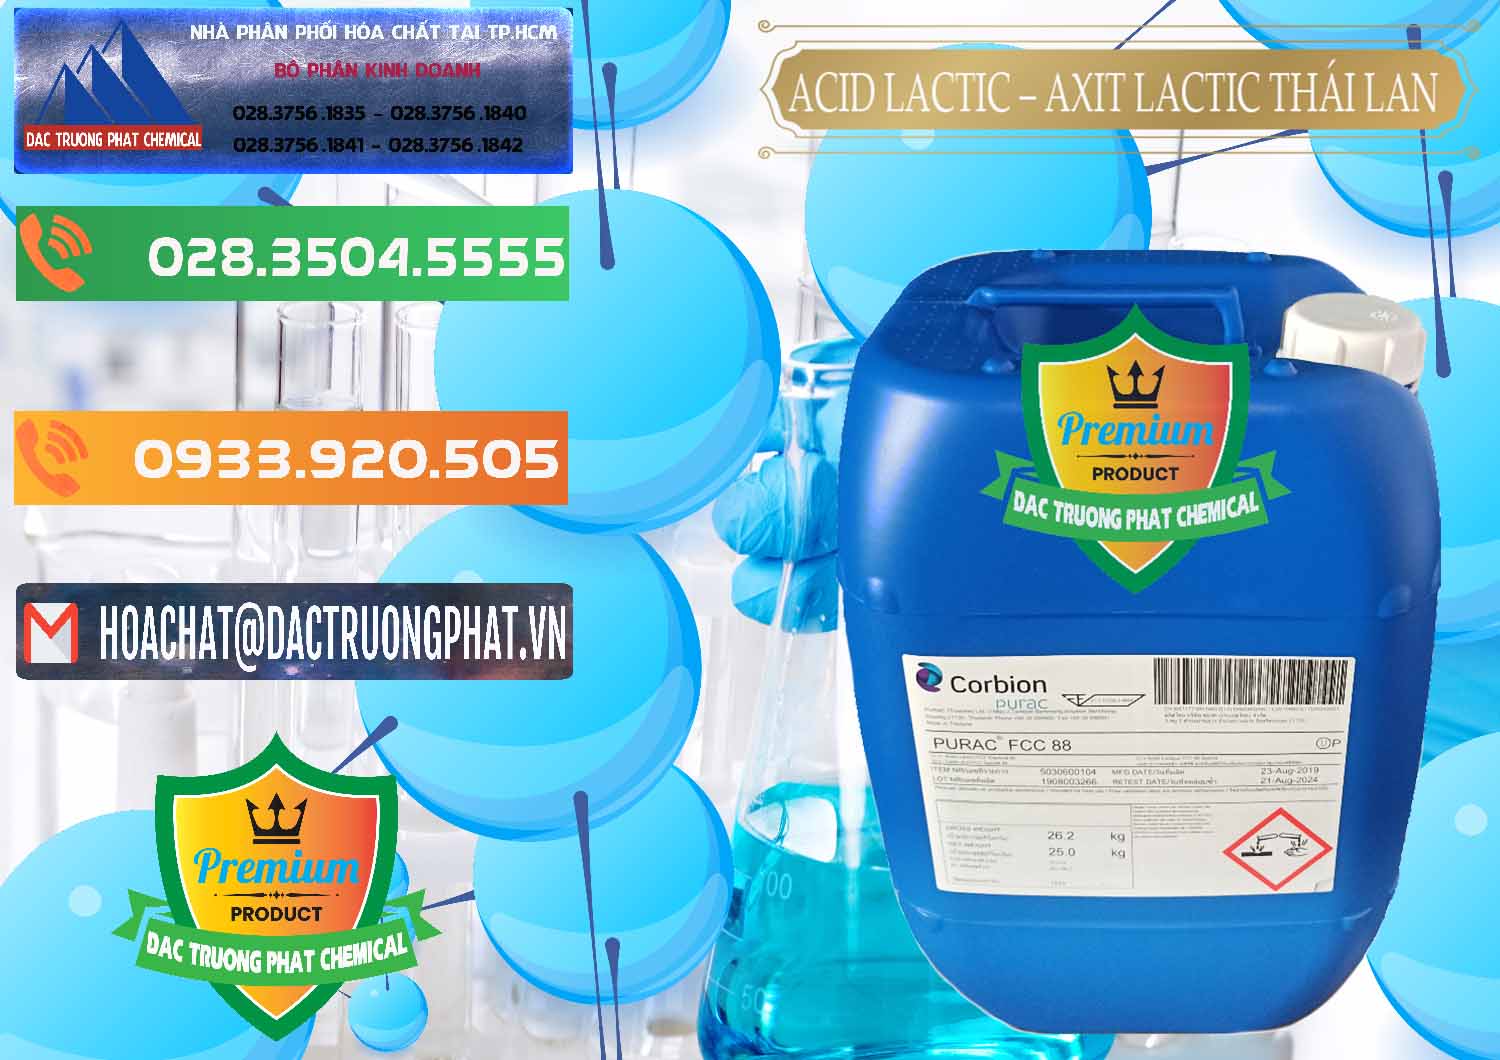 Cty chuyên kinh doanh - bán Acid Lactic – Axit Lactic Thái Lan Purac FCC 88 - 0012 - Nhập khẩu - cung cấp hóa chất tại TP.HCM - hoachatxulynuoc.com.vn